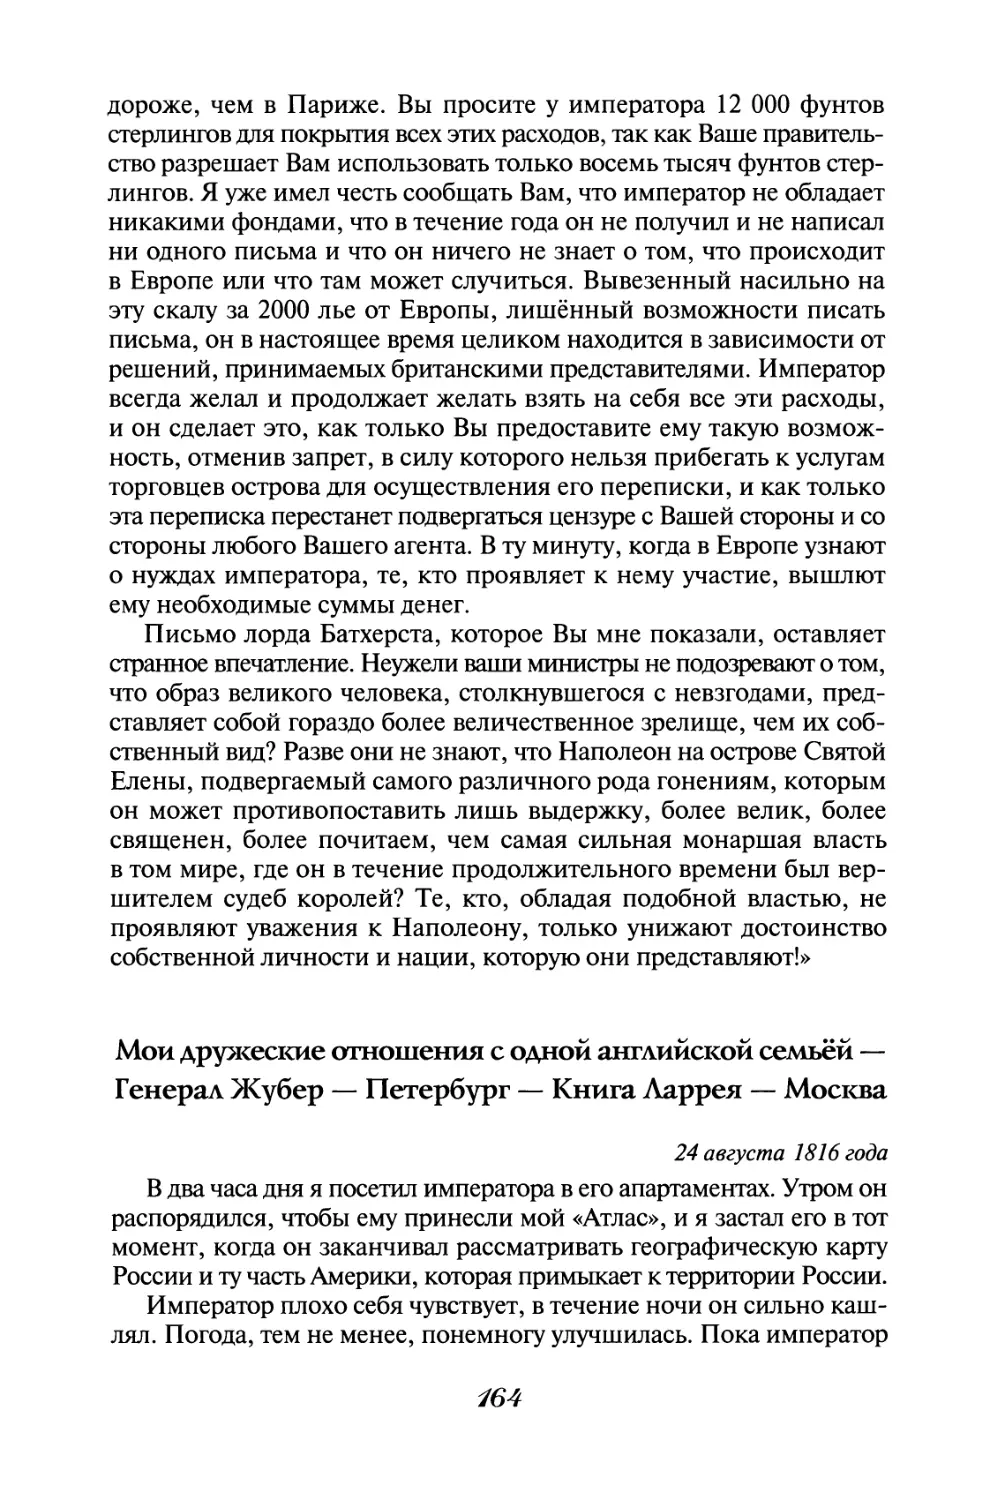 Мои дружеские отношения с одной английской семьёй - Генерал Жубер - Петербург - Книга Ларрея - Москва 24 августа 1816 года